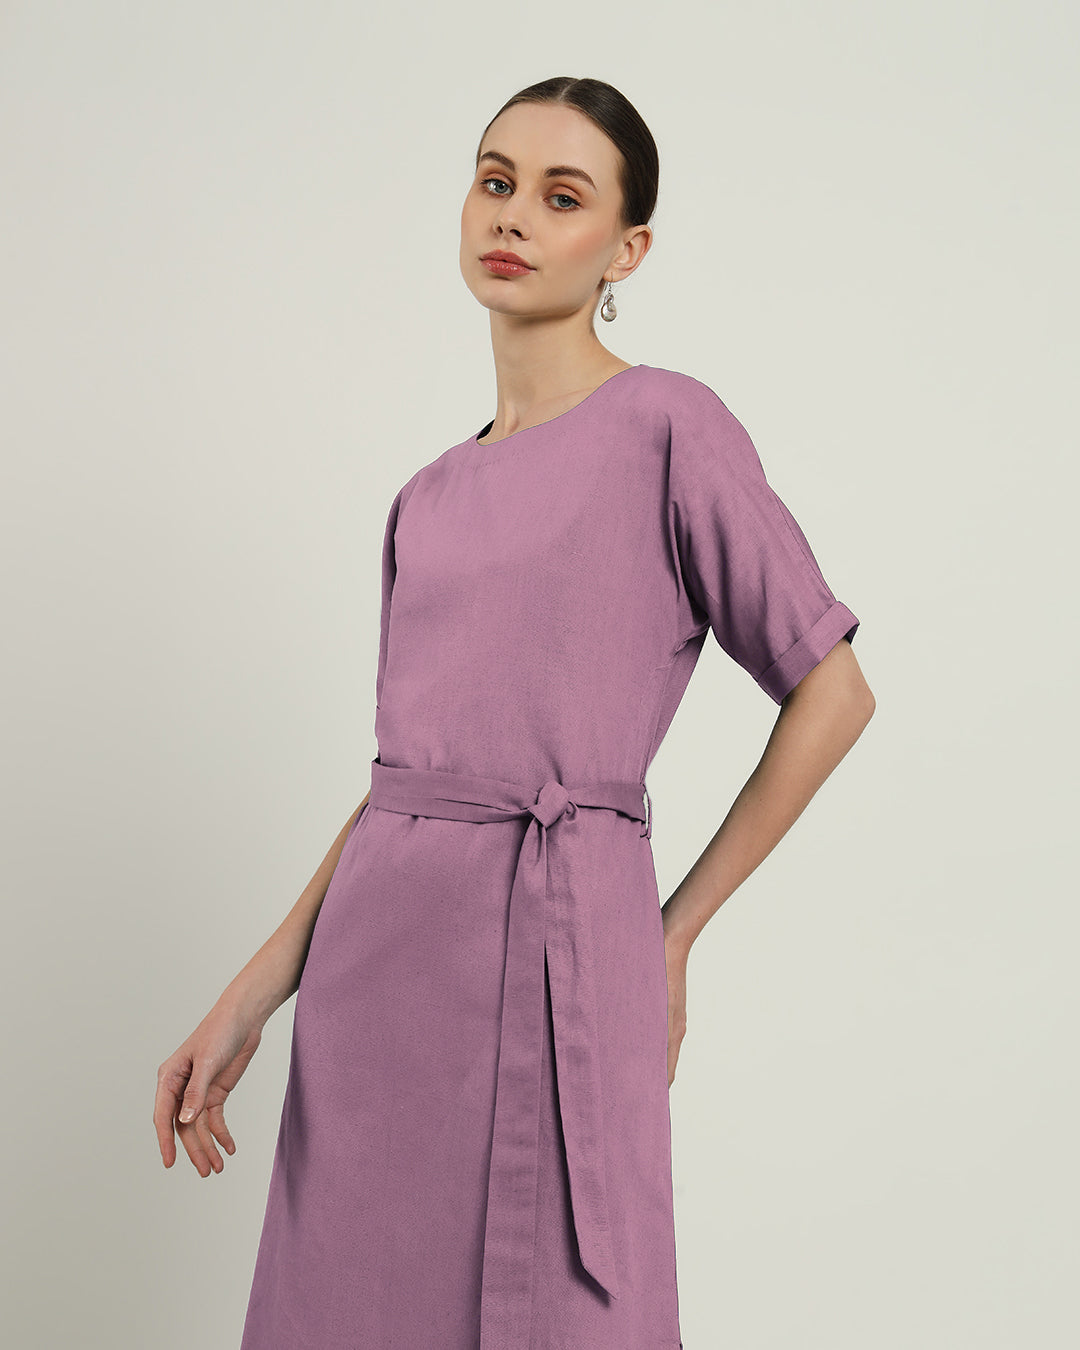 The Tayma Purple Swirl Cotton Dress